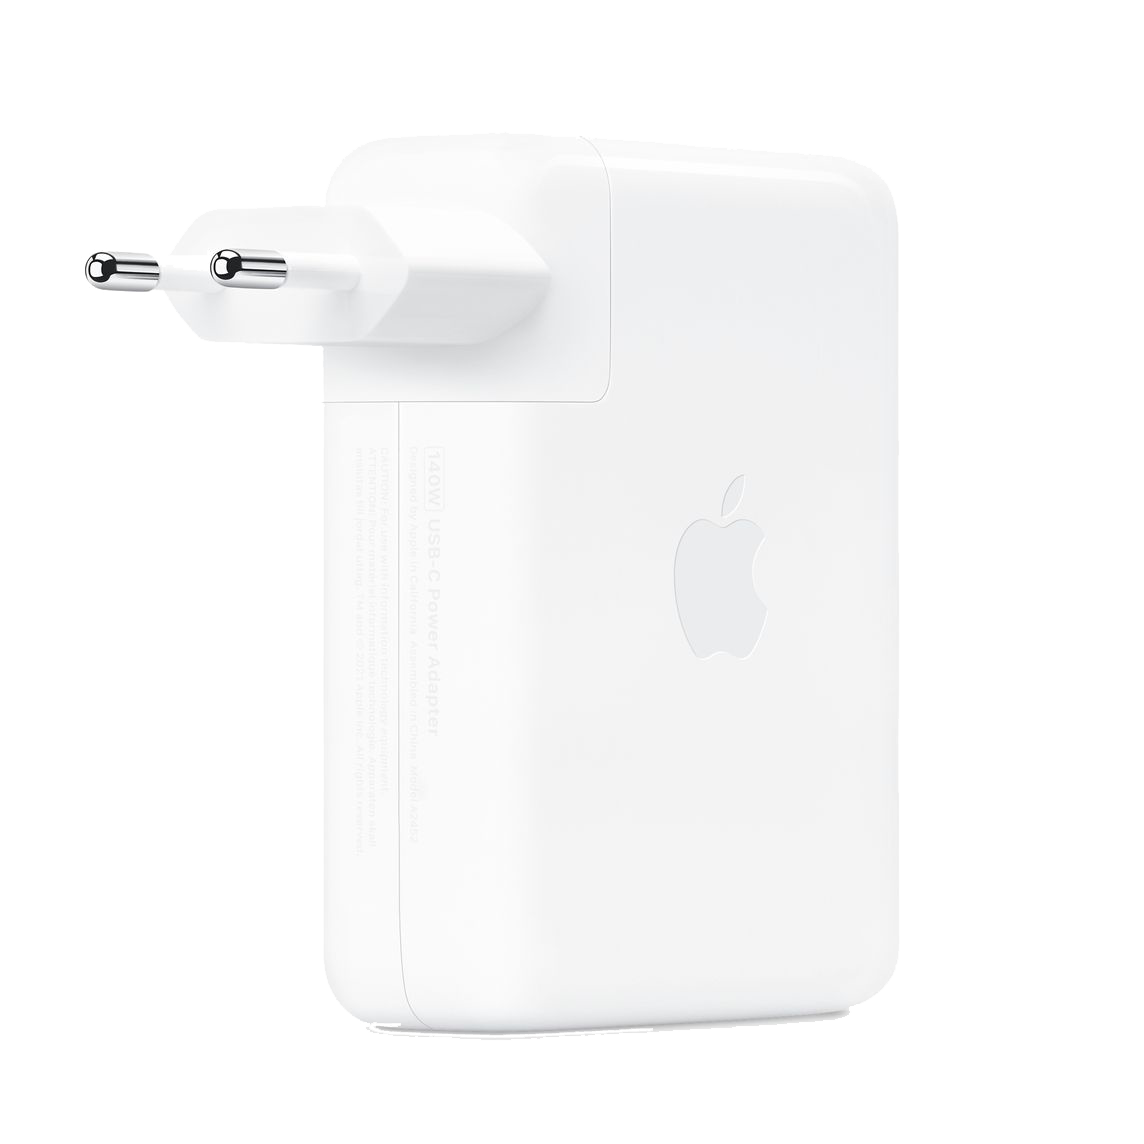 Apple Adaptateur Secteur USB-C 140 W - Chargeur Macbook - Boitier simple,  câble vendu séparément - USB Plug, livré avec un Adaptateur